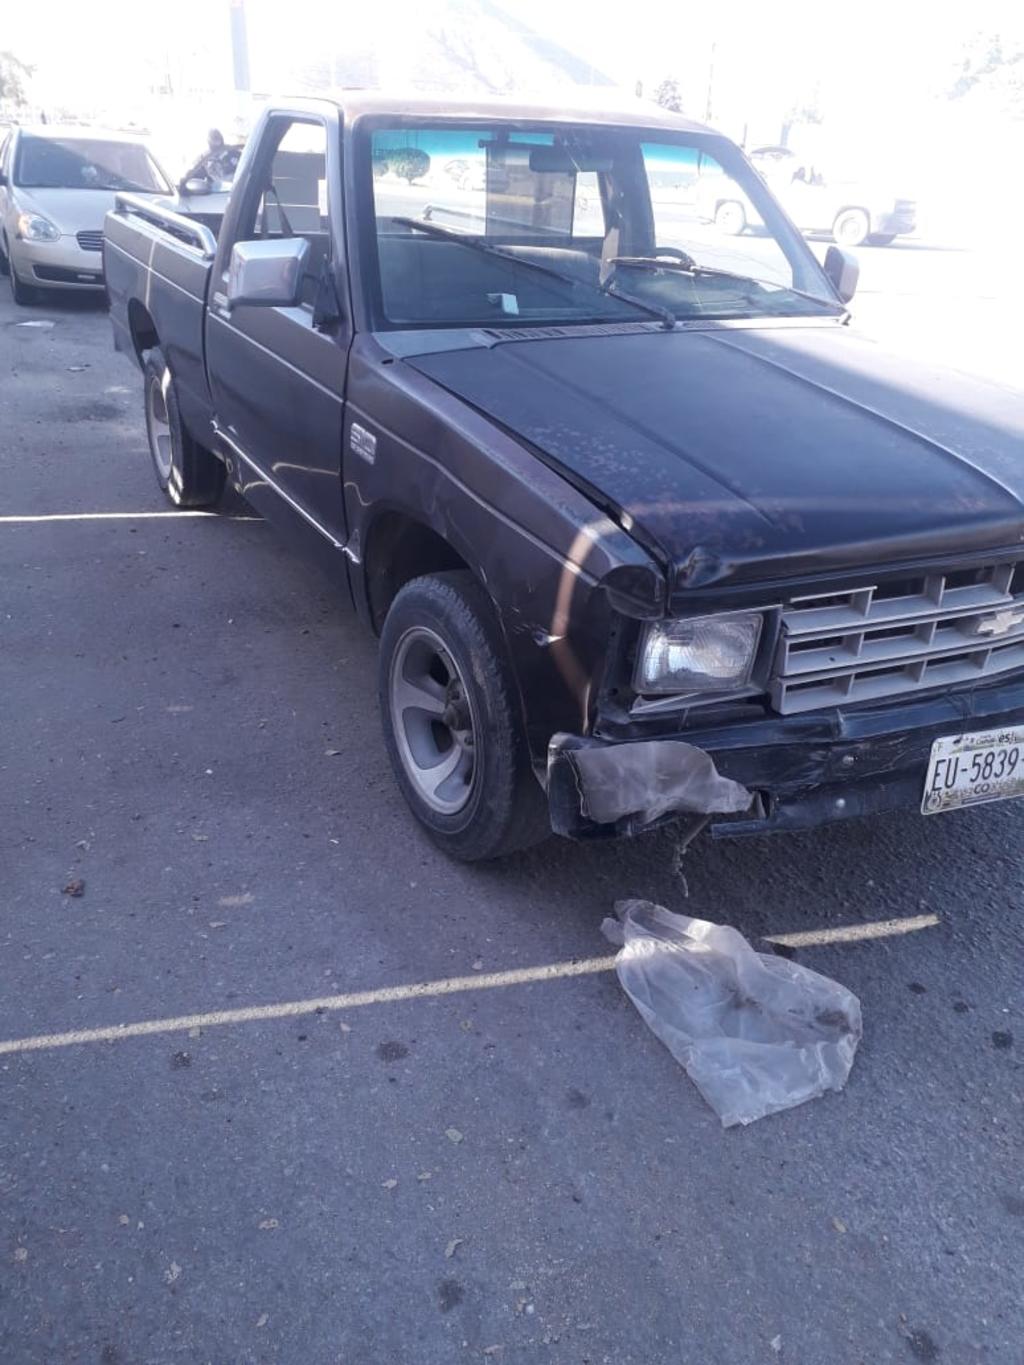 
Uno de los vehículos involucrados es una camioneta Chevrolet S-10, color negro, con placas de circulación del estado de Coahuila.

(EL SIGLO DE TORREÓ